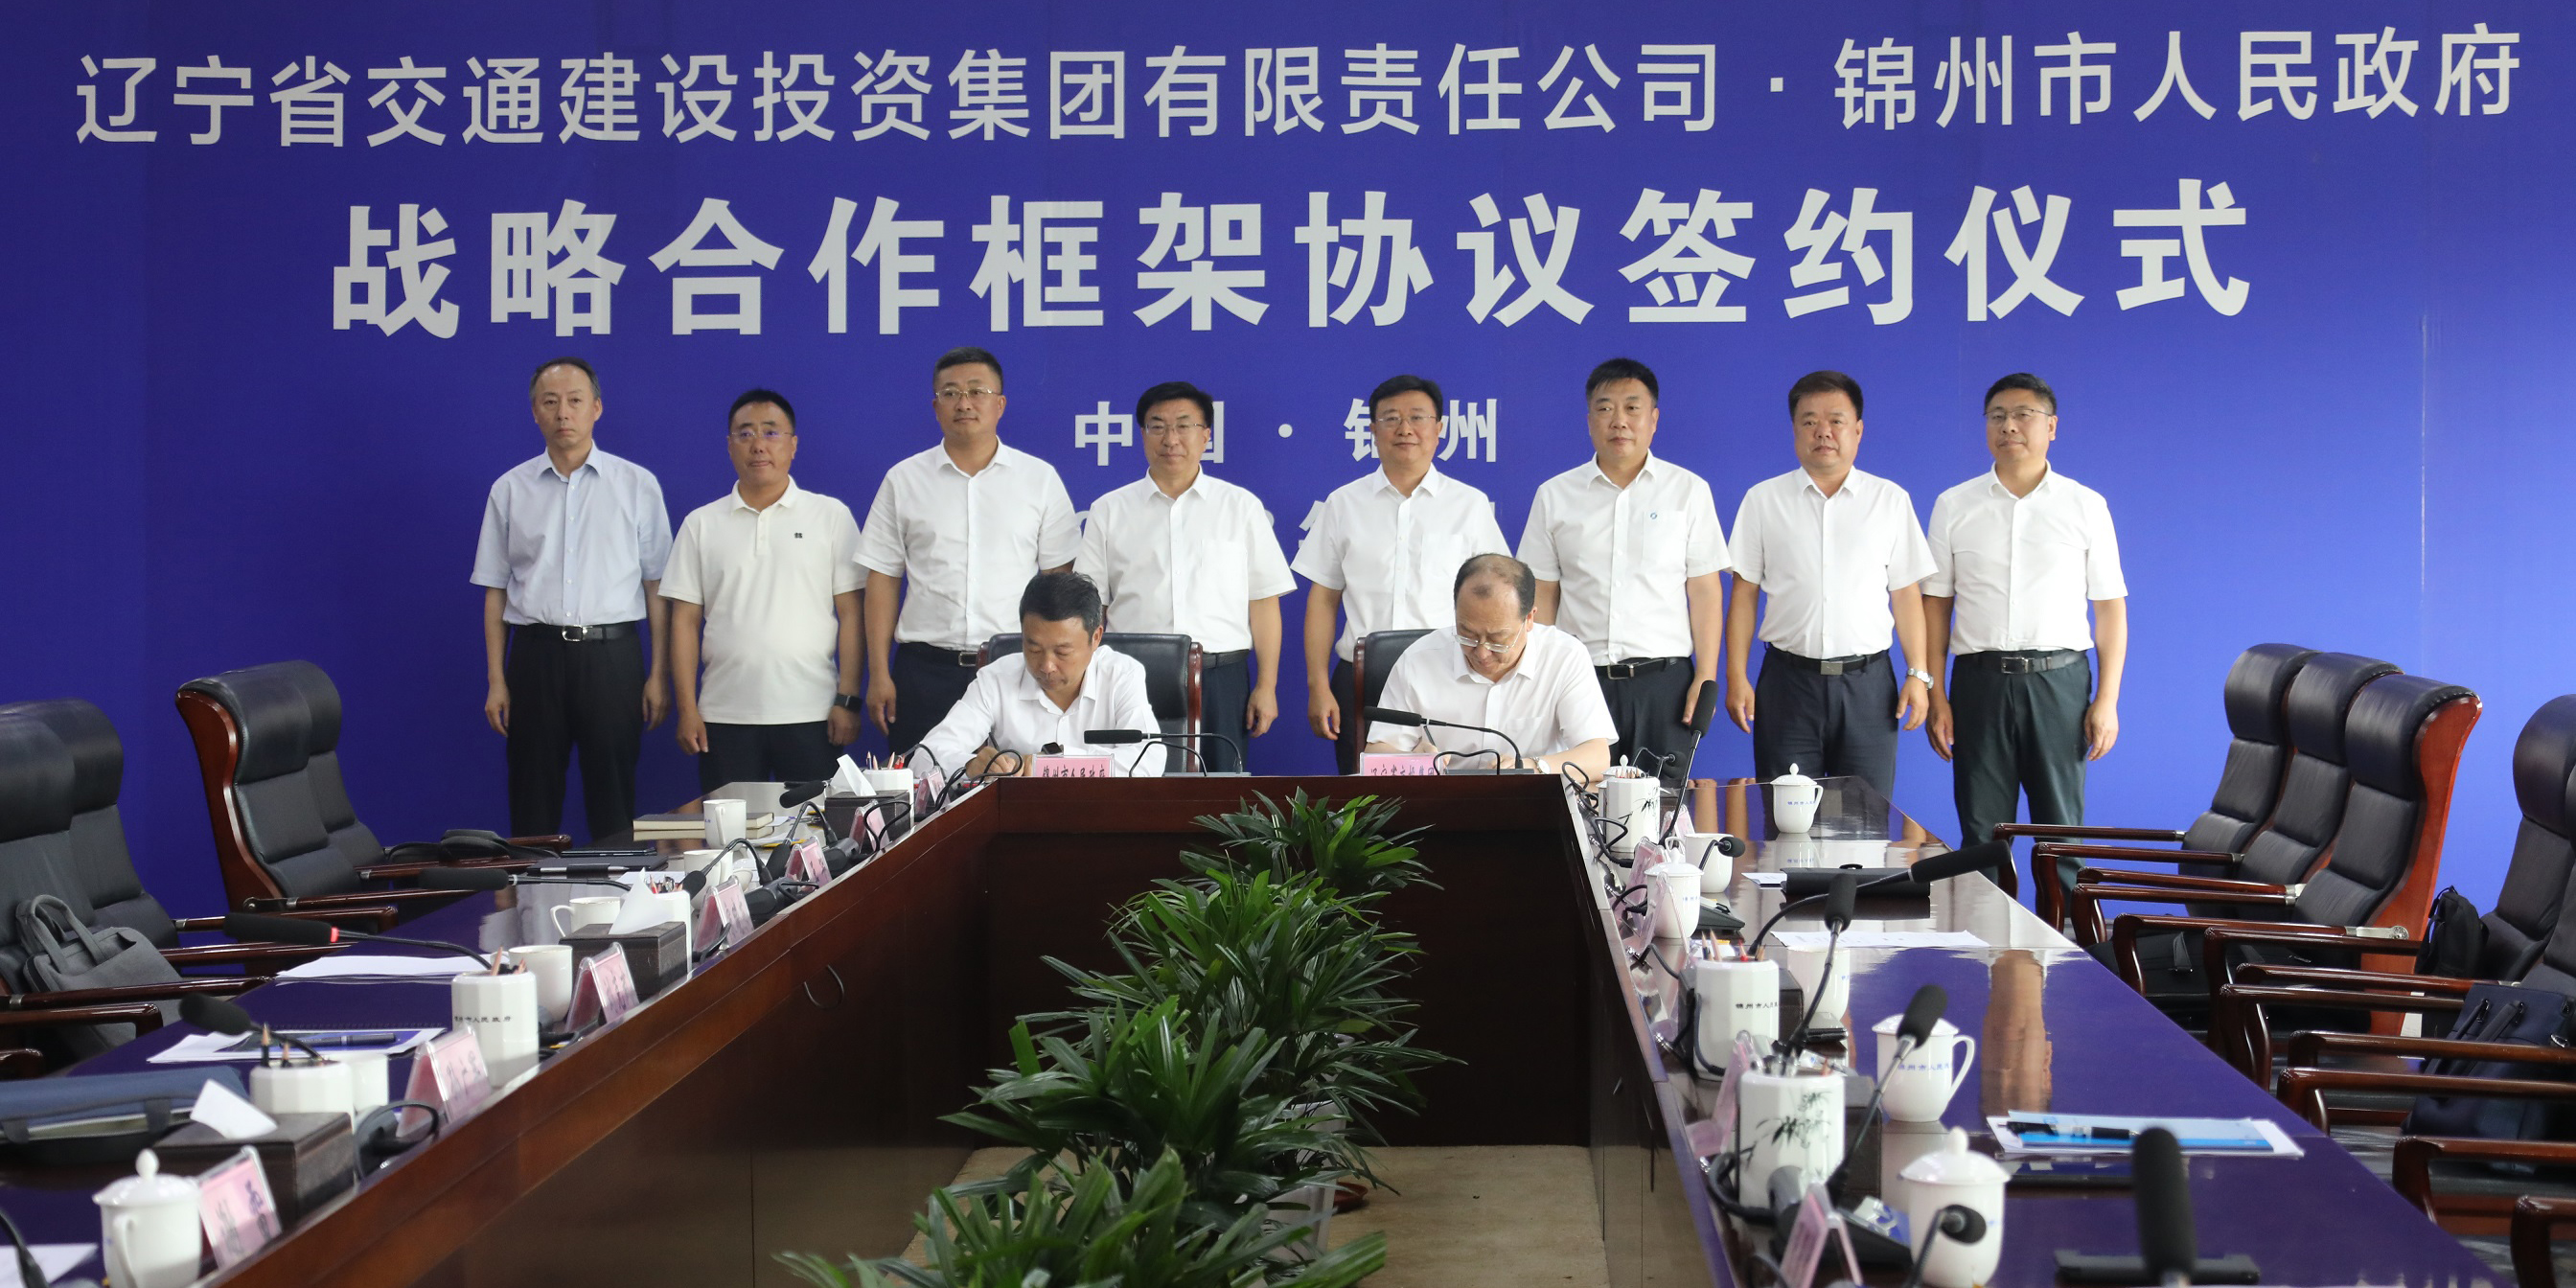 遼寧交投集團與錦州市人民政府簽訂戰略合作框架協議